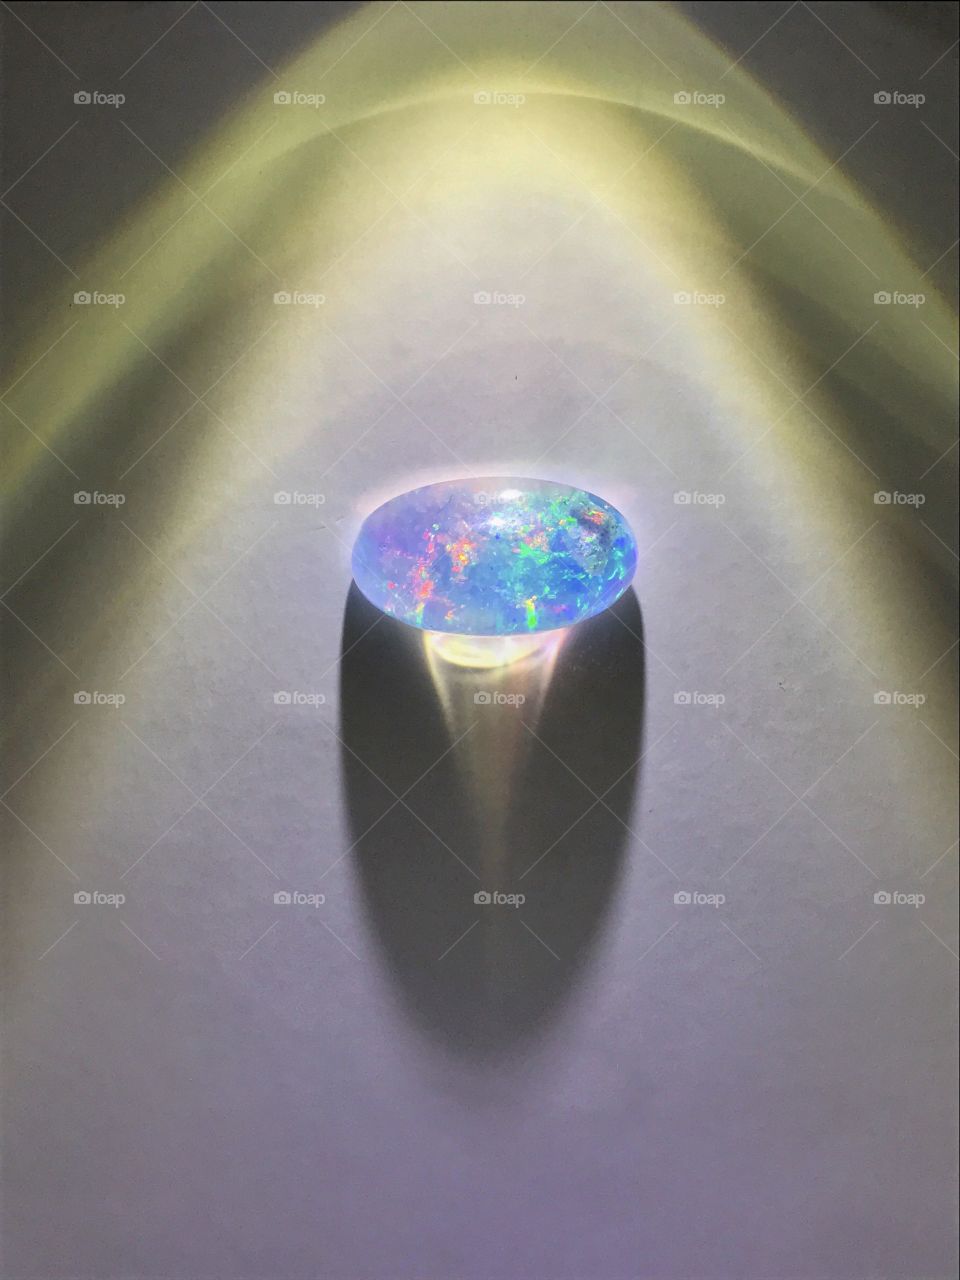 The precious opal